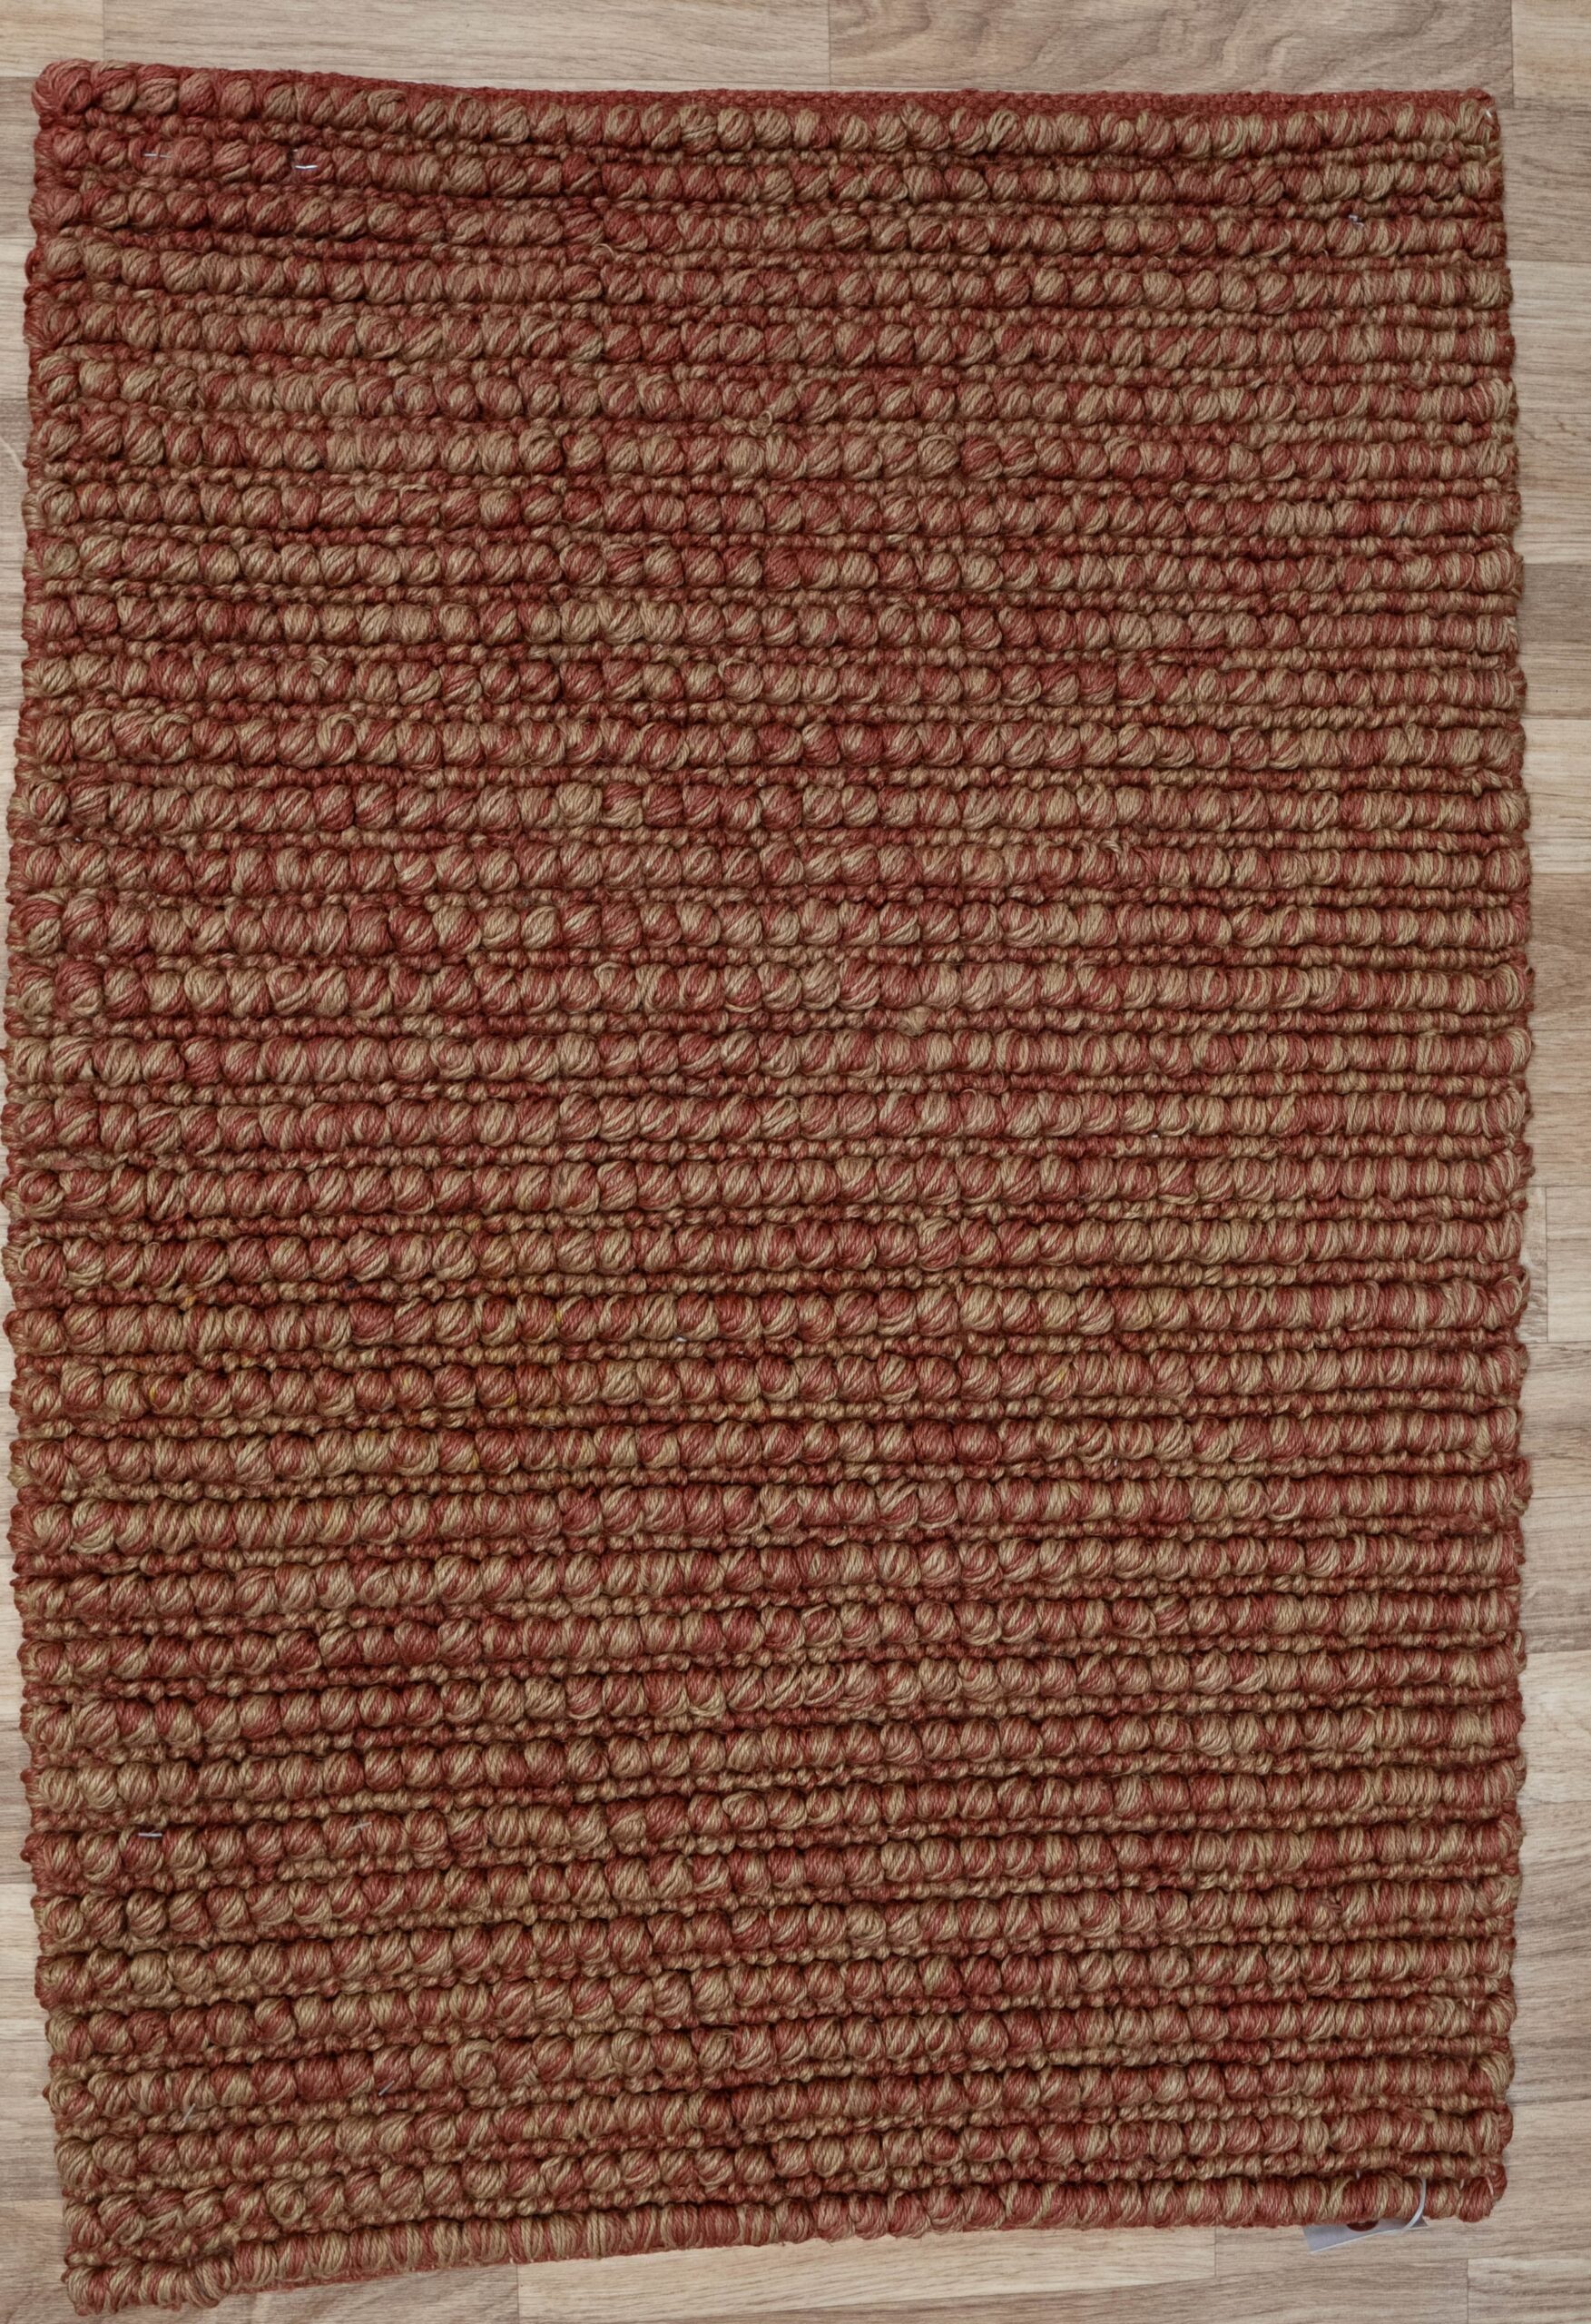 Tibet Wool Rug 2.03.0